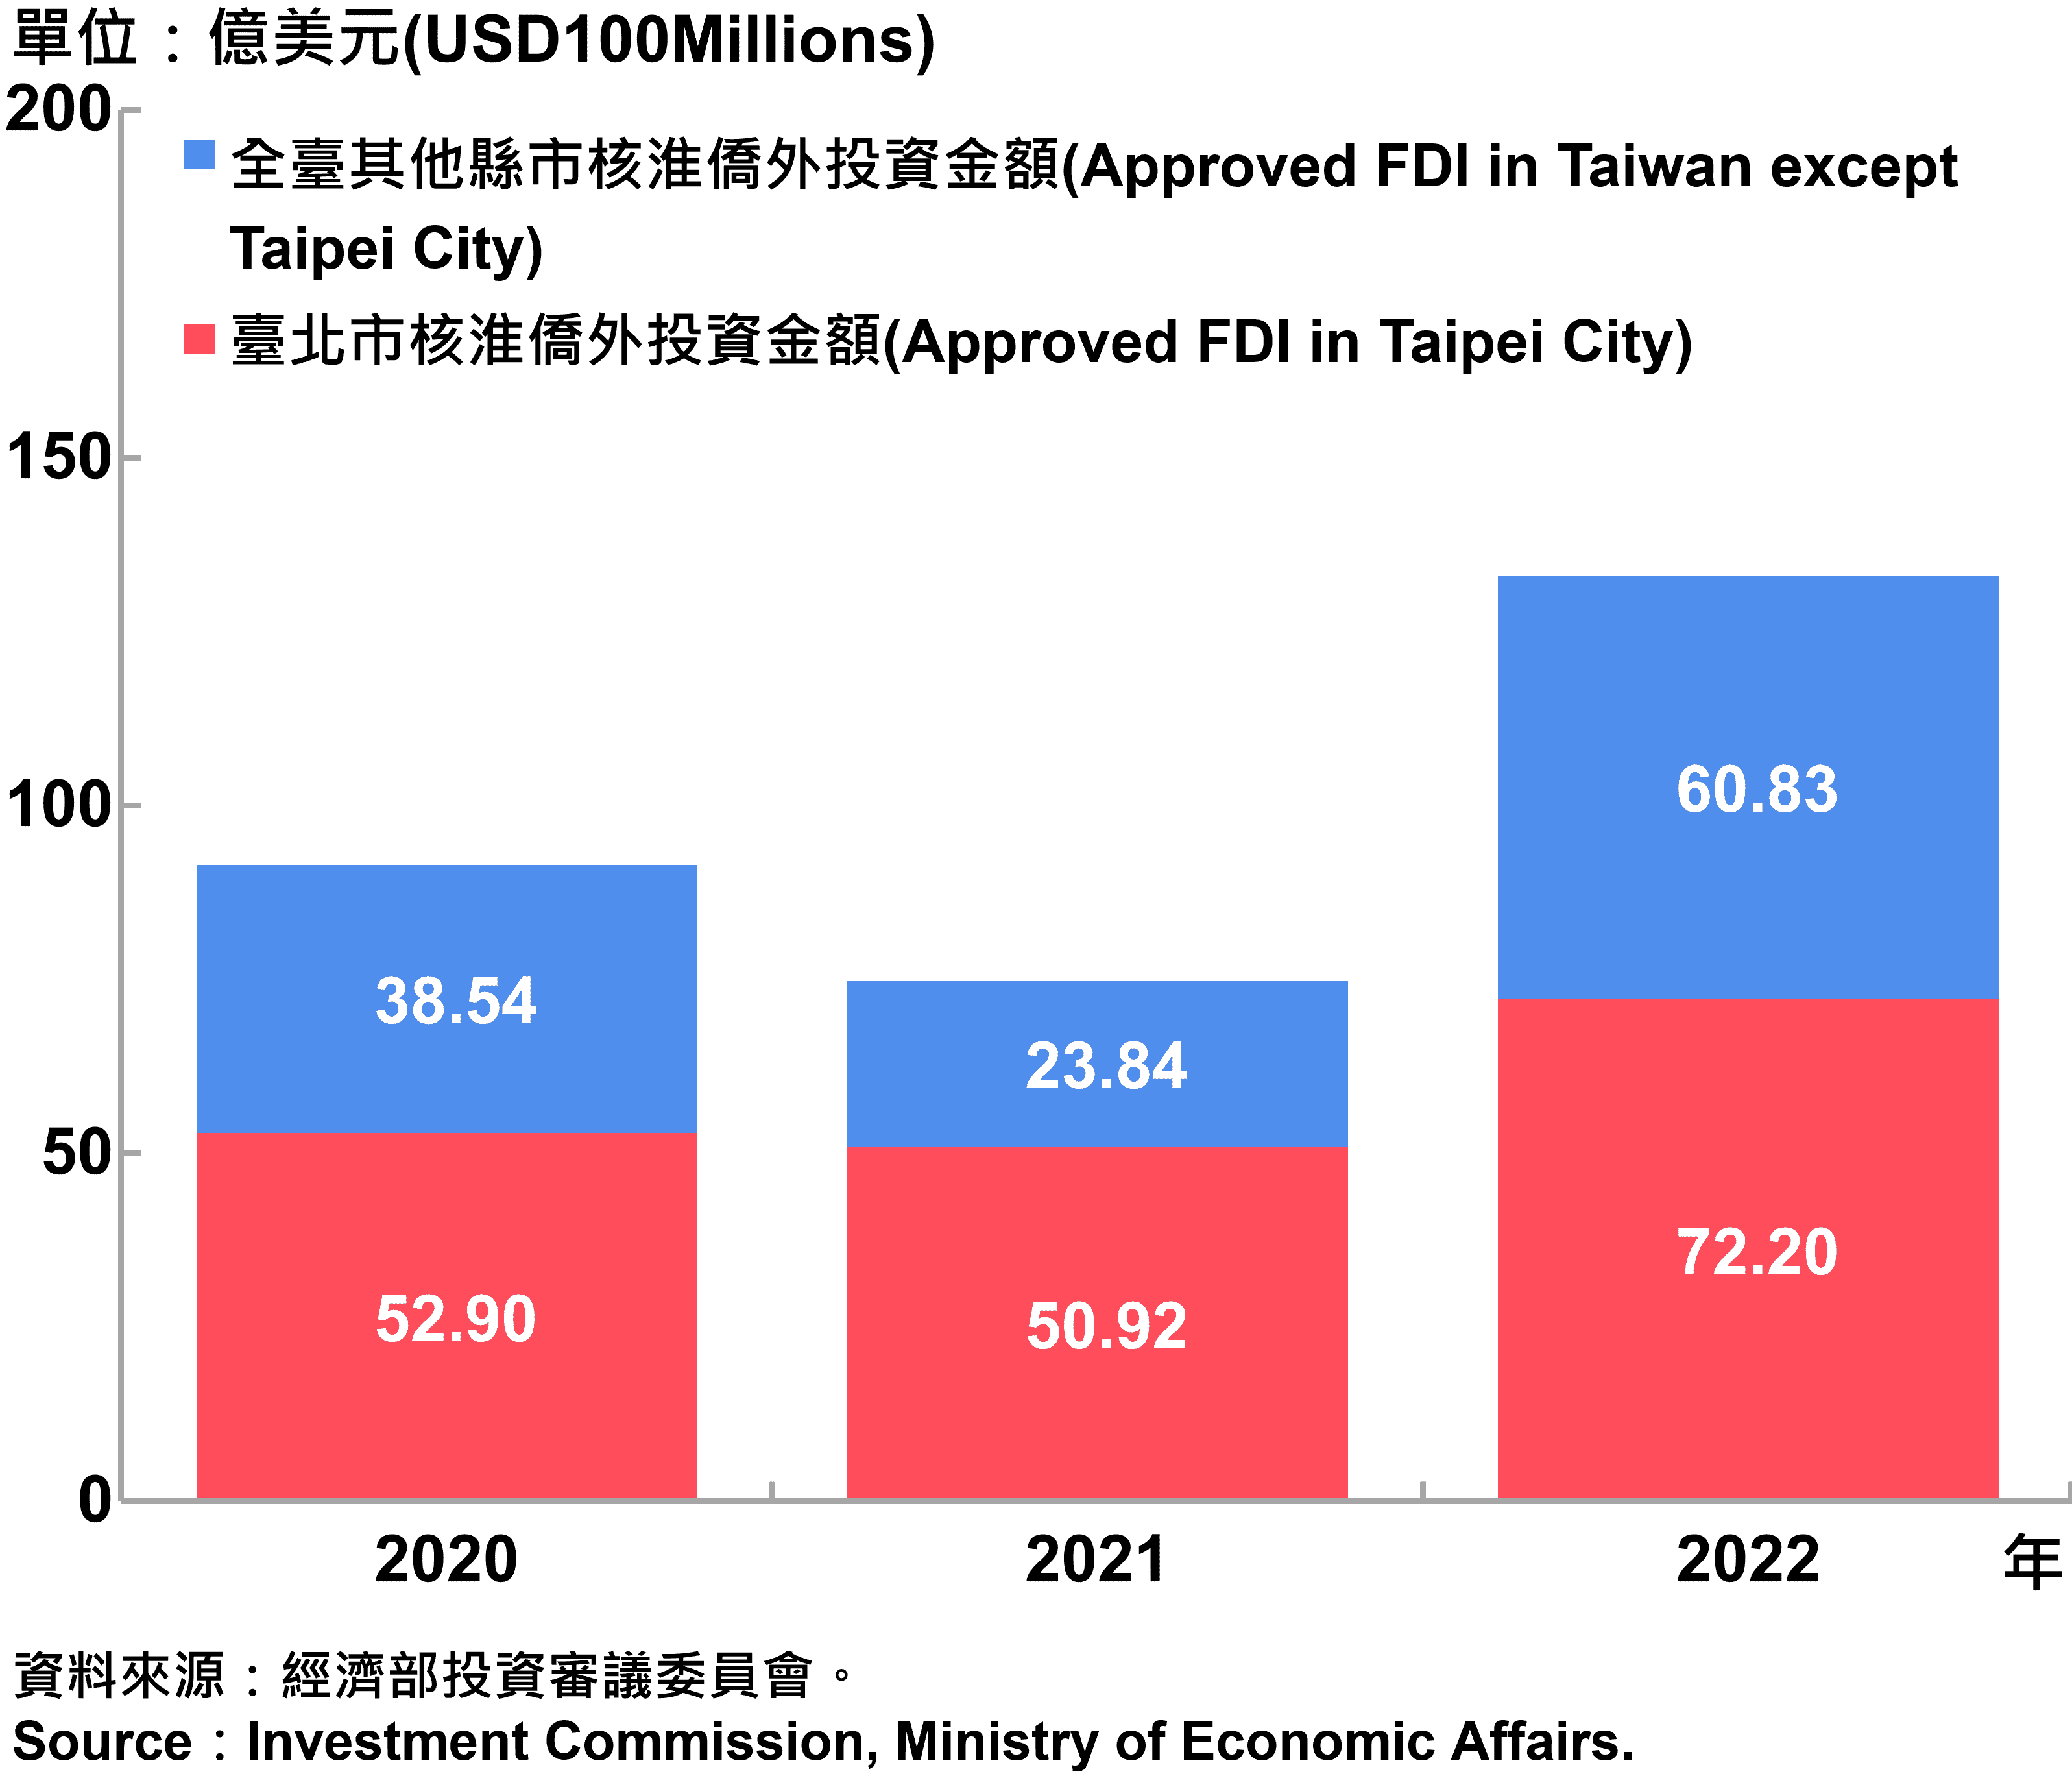 臺北市與全國僑外投資金額—2022 Foreign Direct Investment（FDI）in Taipei City and Taiwan—2022